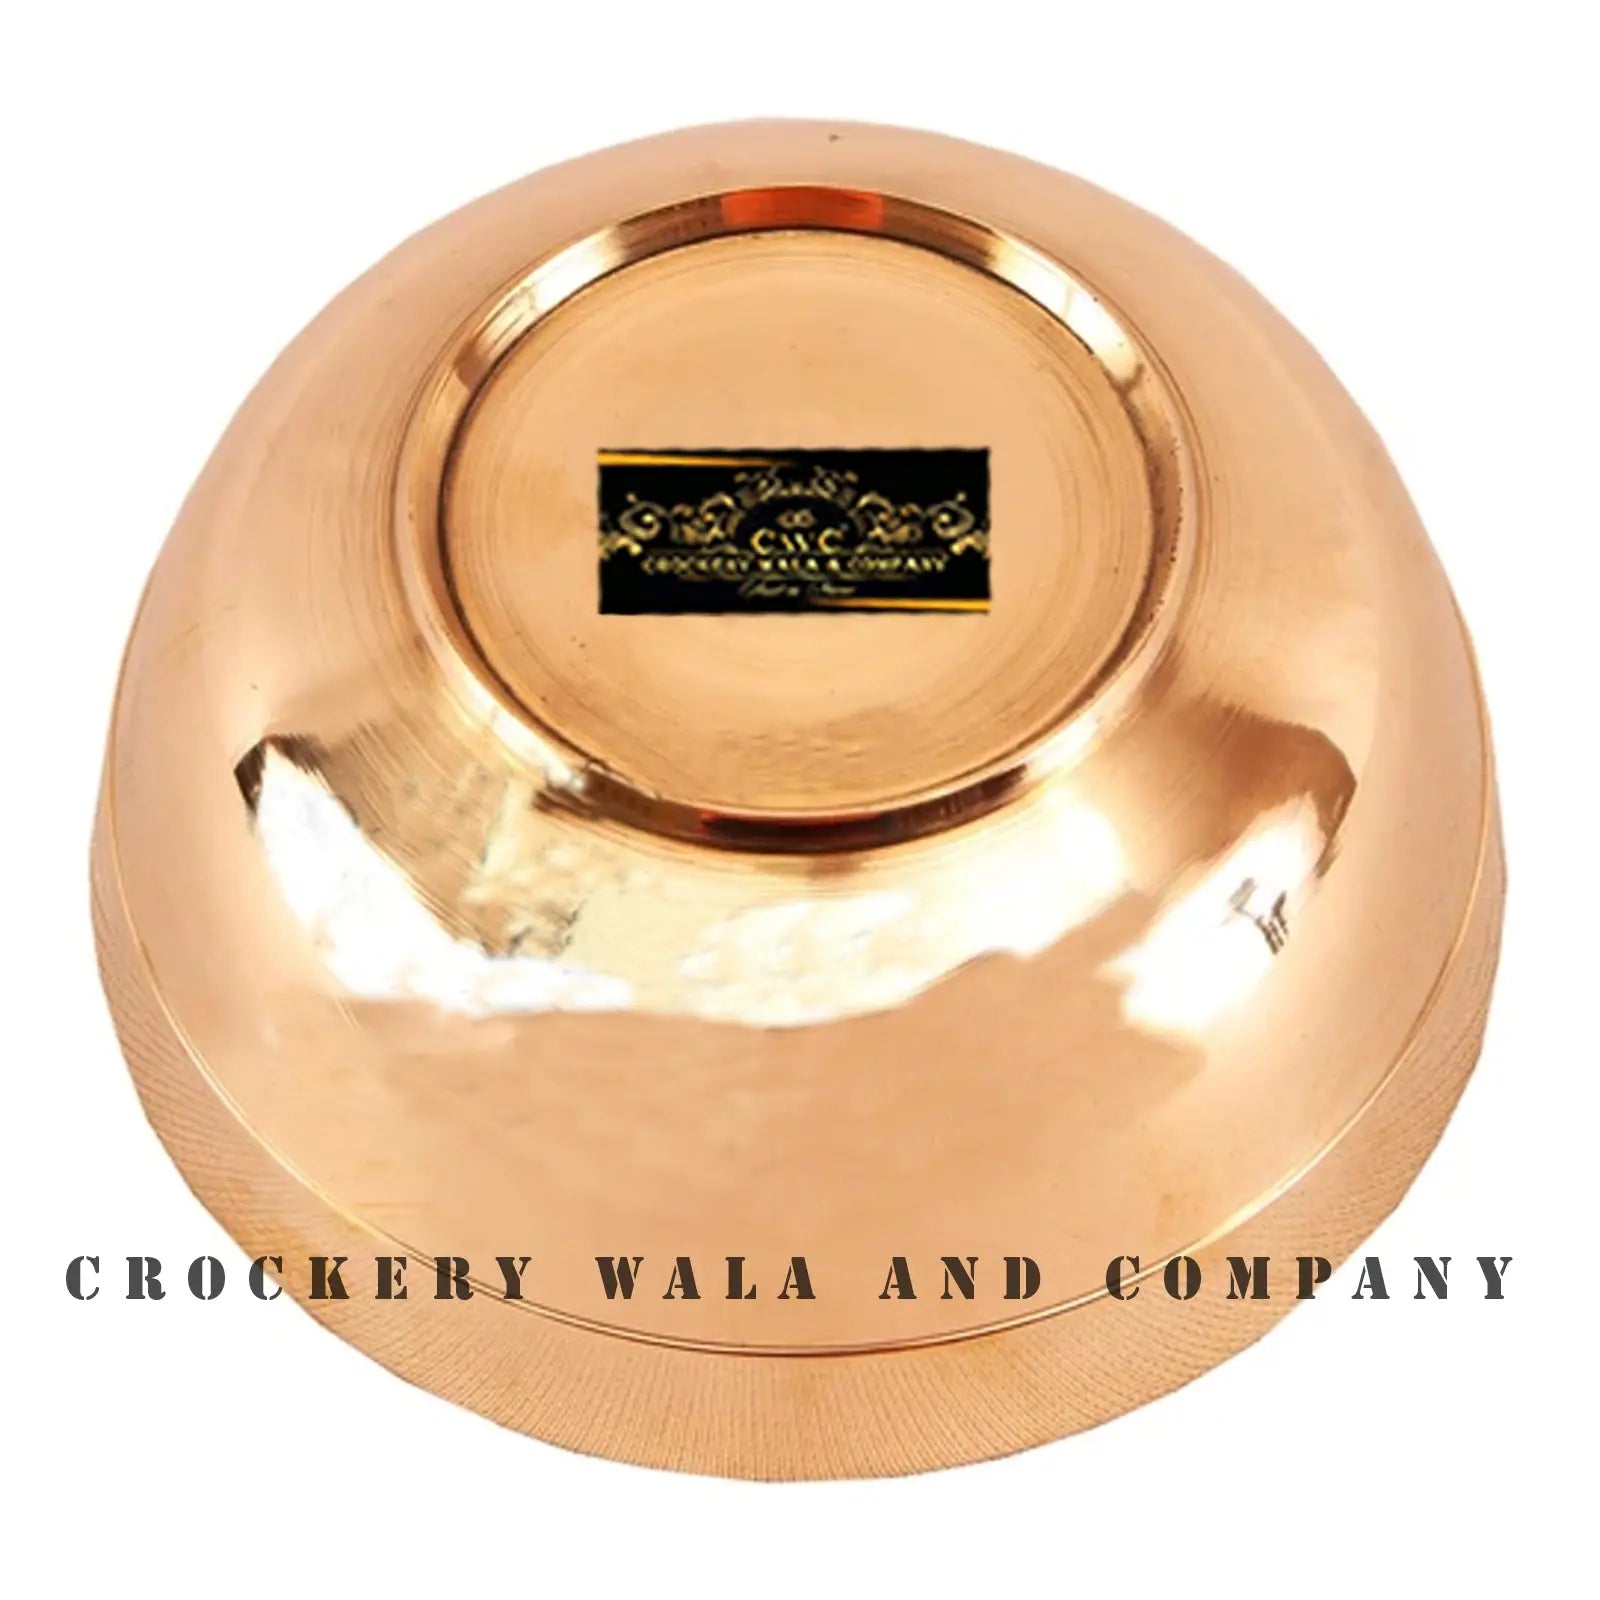 Crockery Wala And Company Bronze Bowl Lining Serving Bowl Katori Kansa Katori 250 ML - 1 Pc - CROCKERY WALA AND COMPANY 